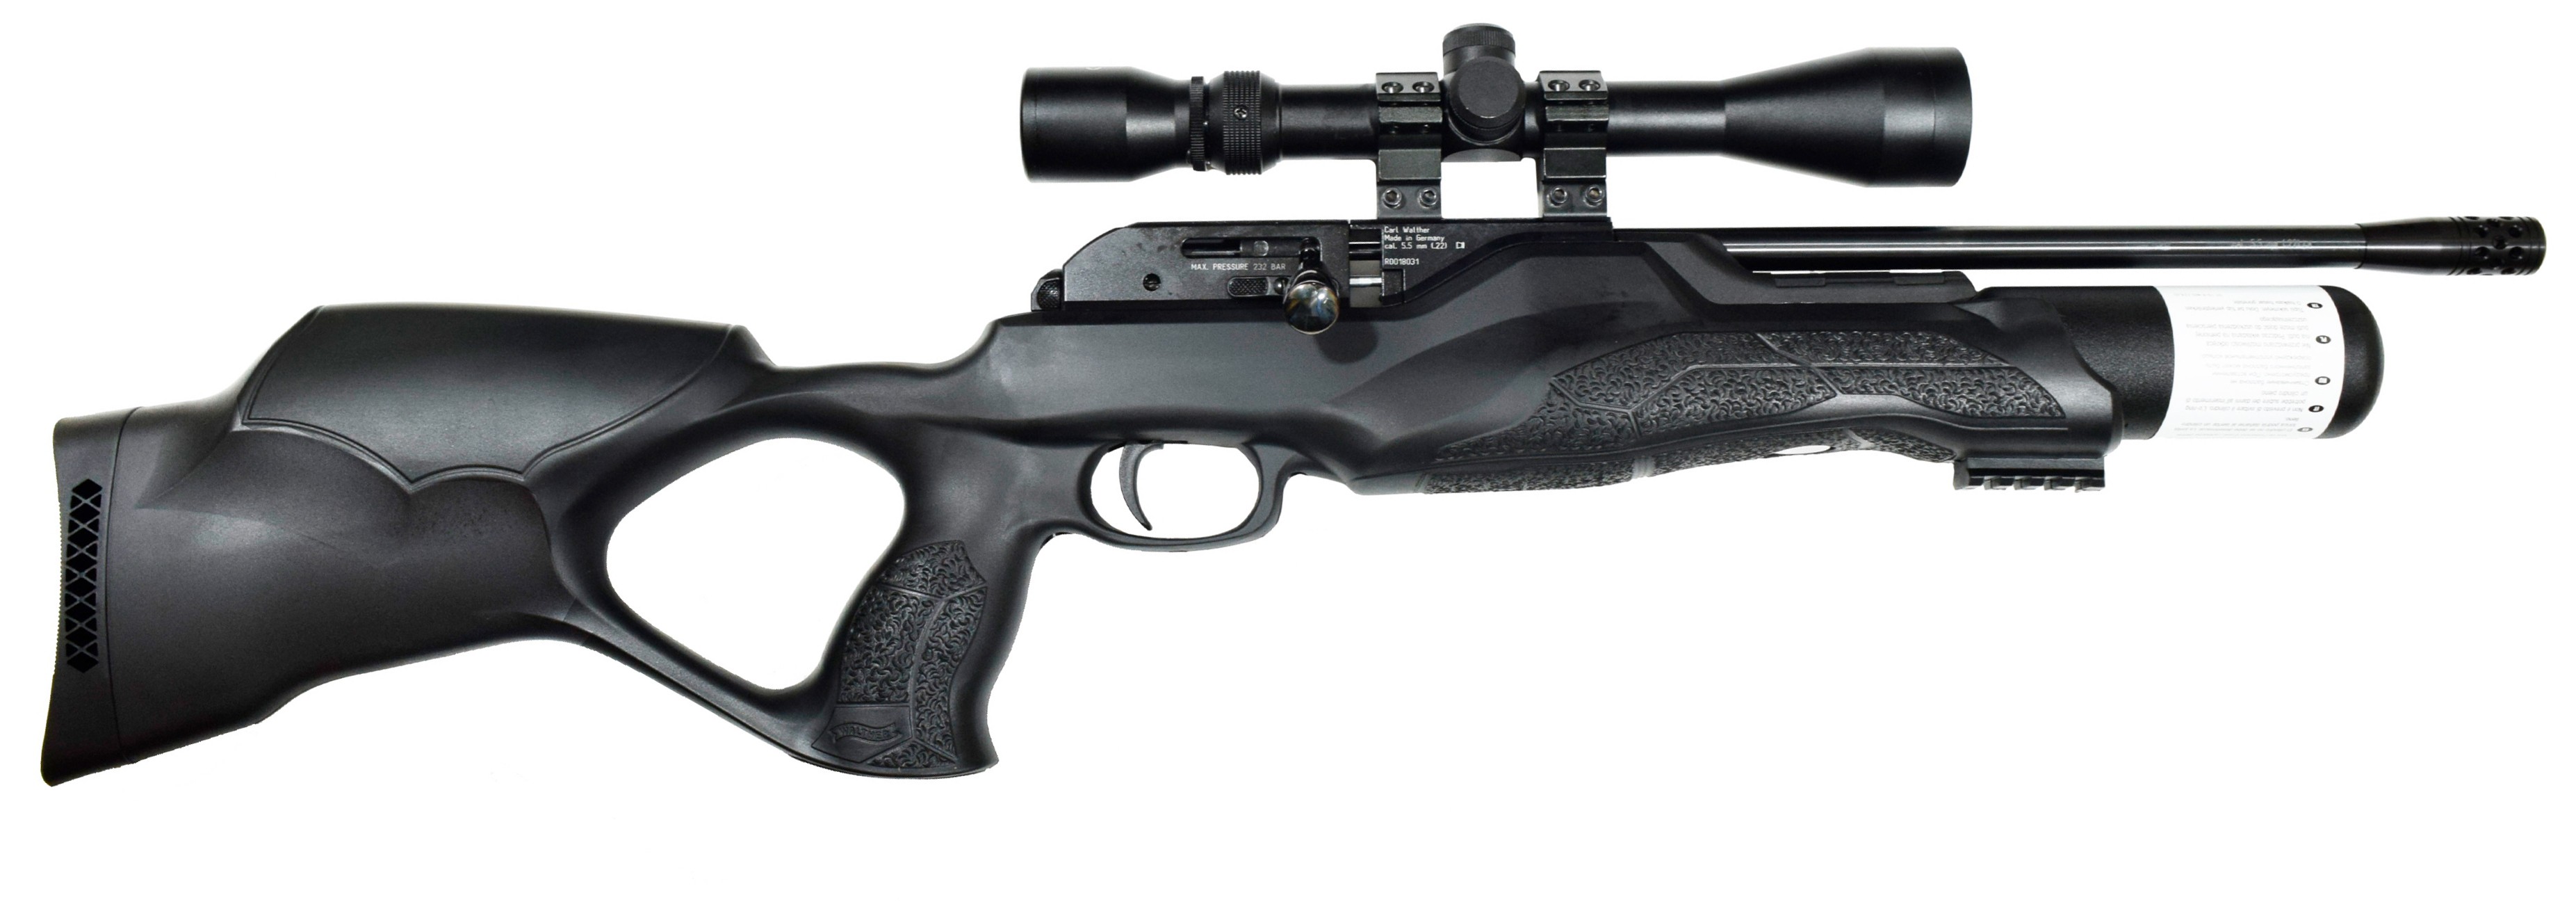 Пневматическая винтовка Umarex Walther Rotex RM8 Varmint 5,5 мм (PCP, 3 Дж)